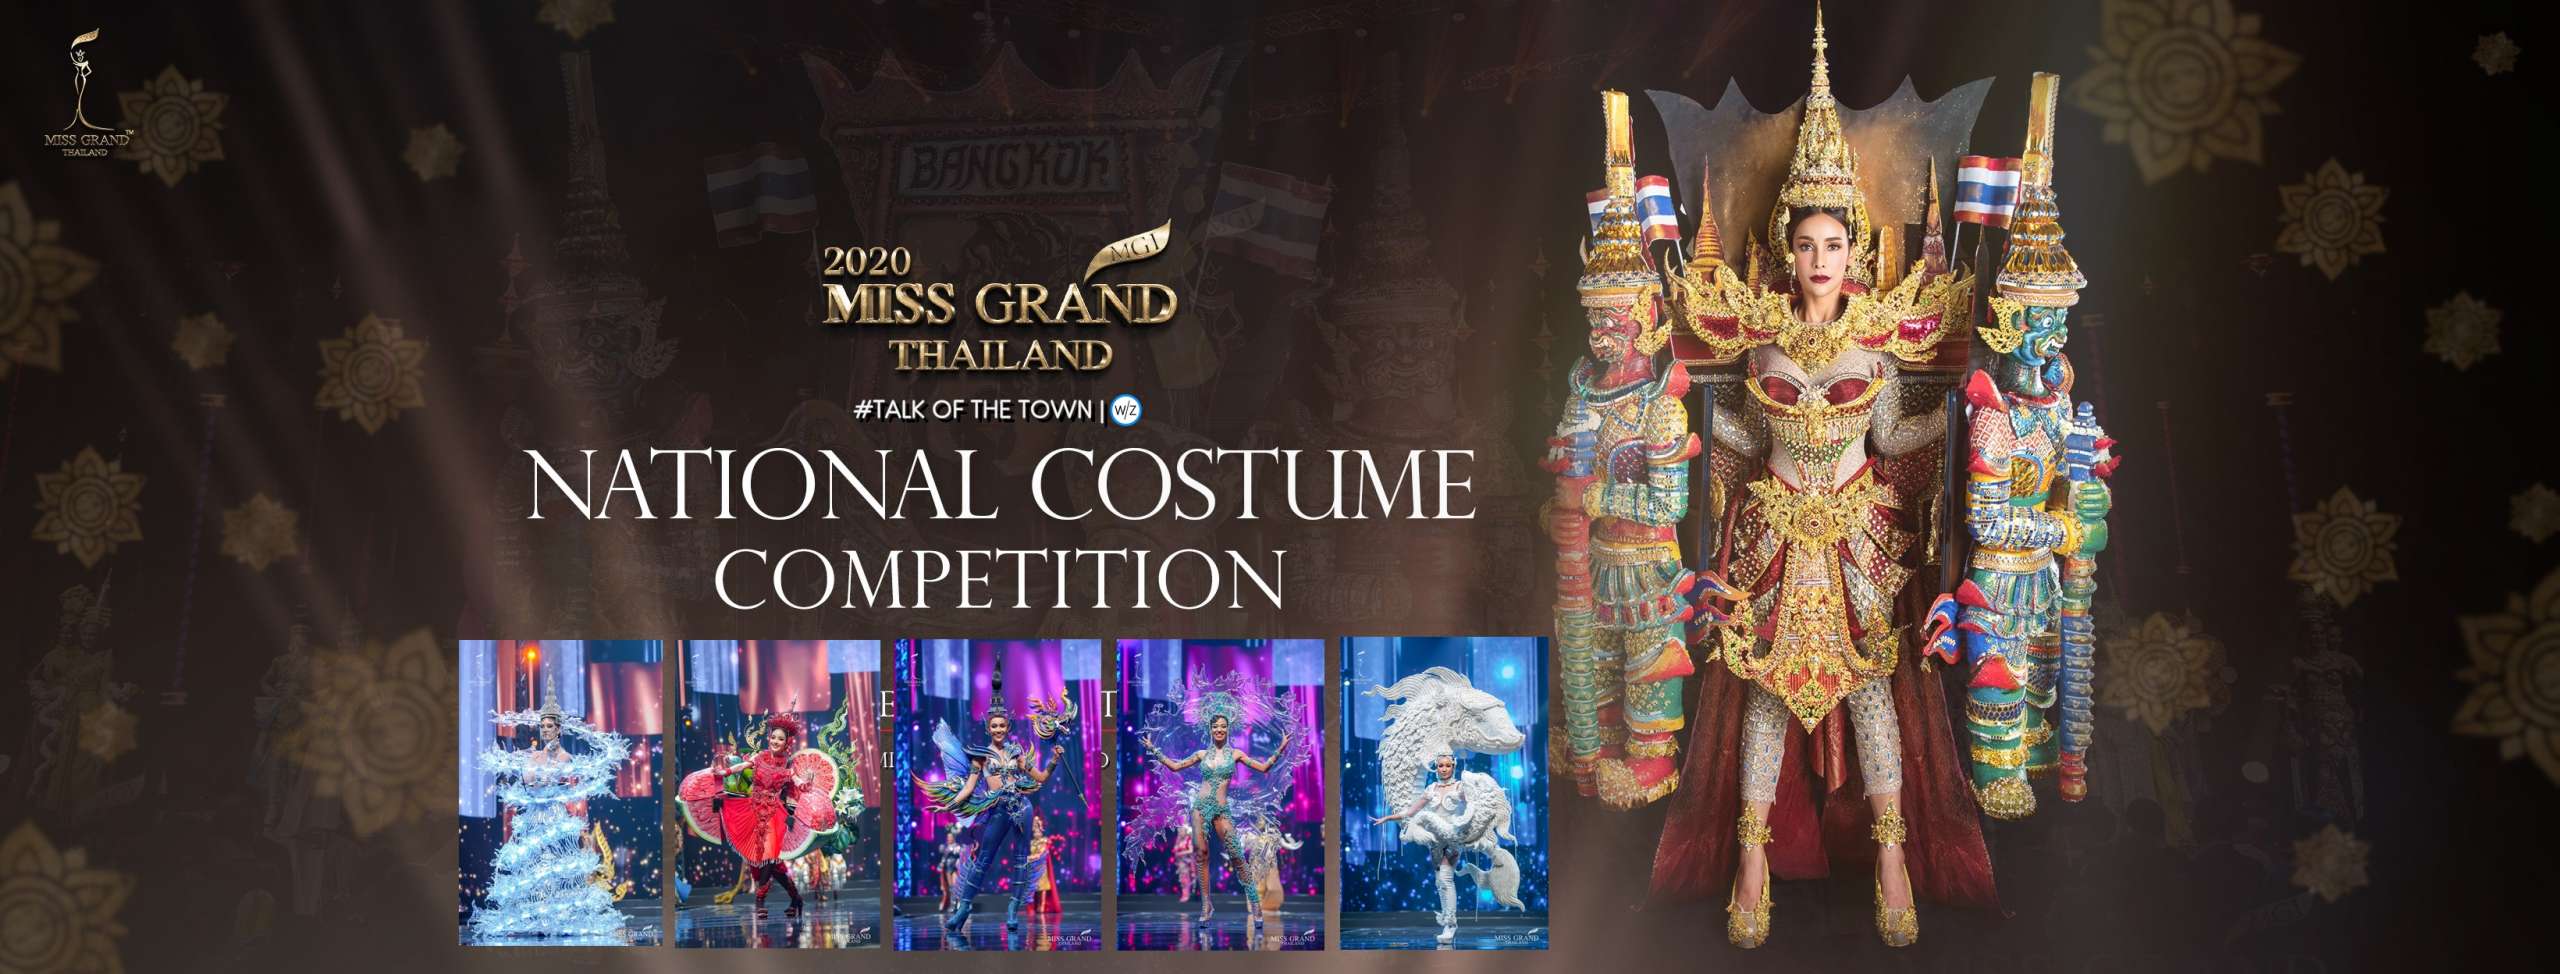 ปังสุดๆ กับชุดประจำชาติ Miss Grand Thailand 2020